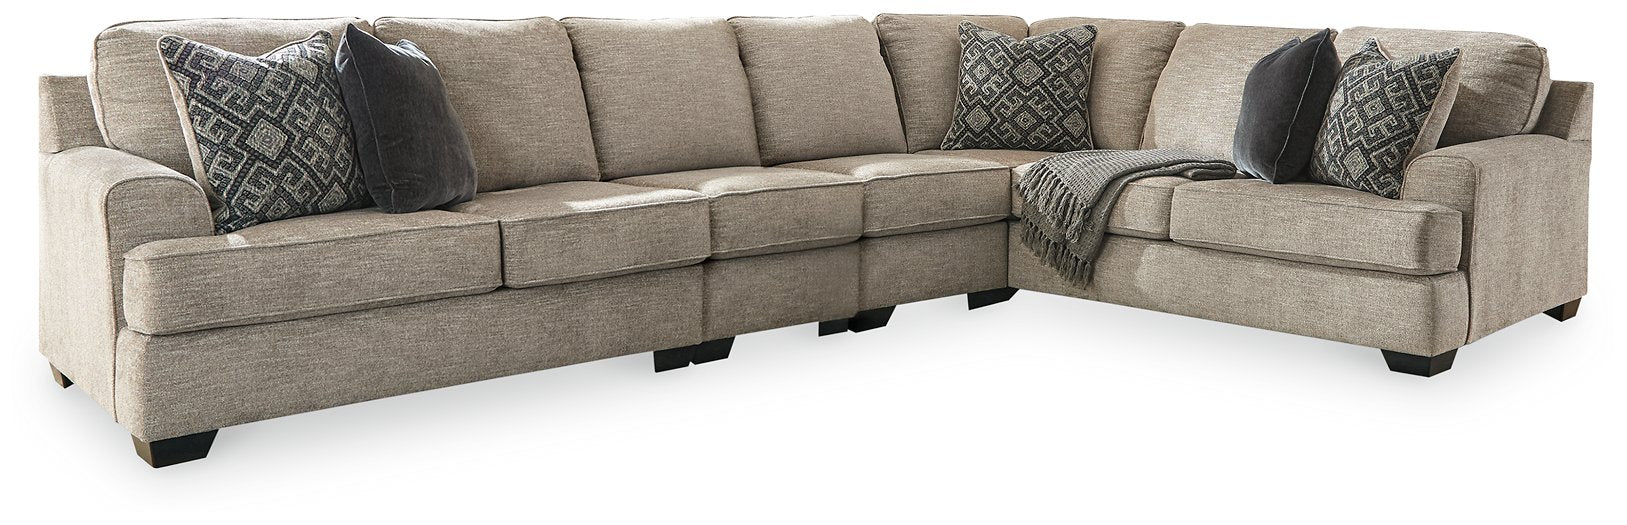 Bovarian Living Room Set - All Brands Furniture (NJ)